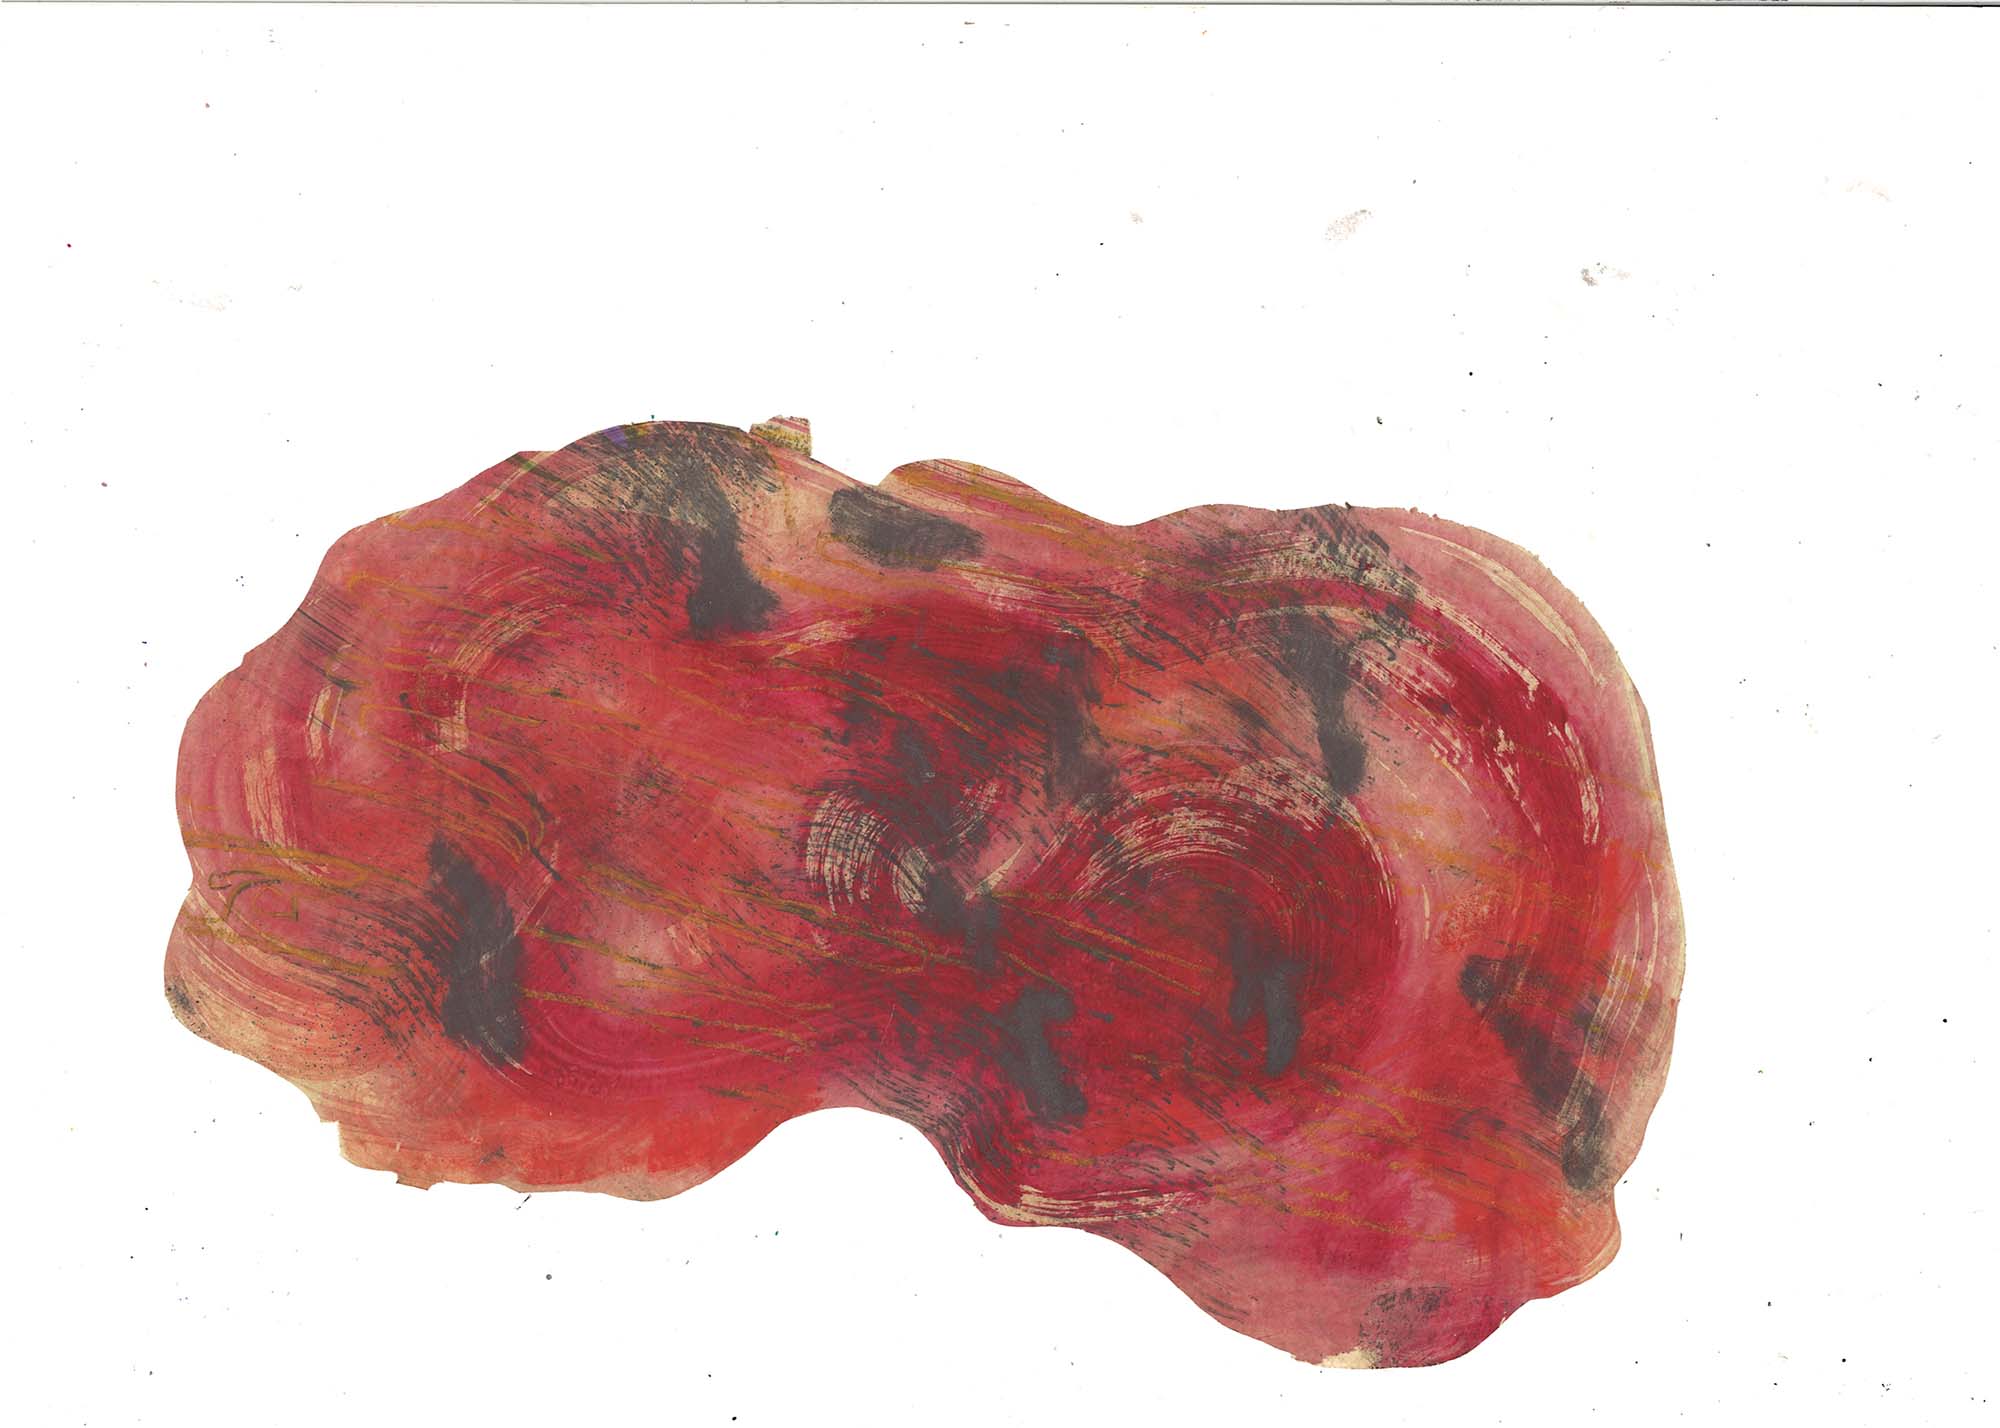 Zone d’eau rouge,
huile et graphite sur papier
25 x 15 cm